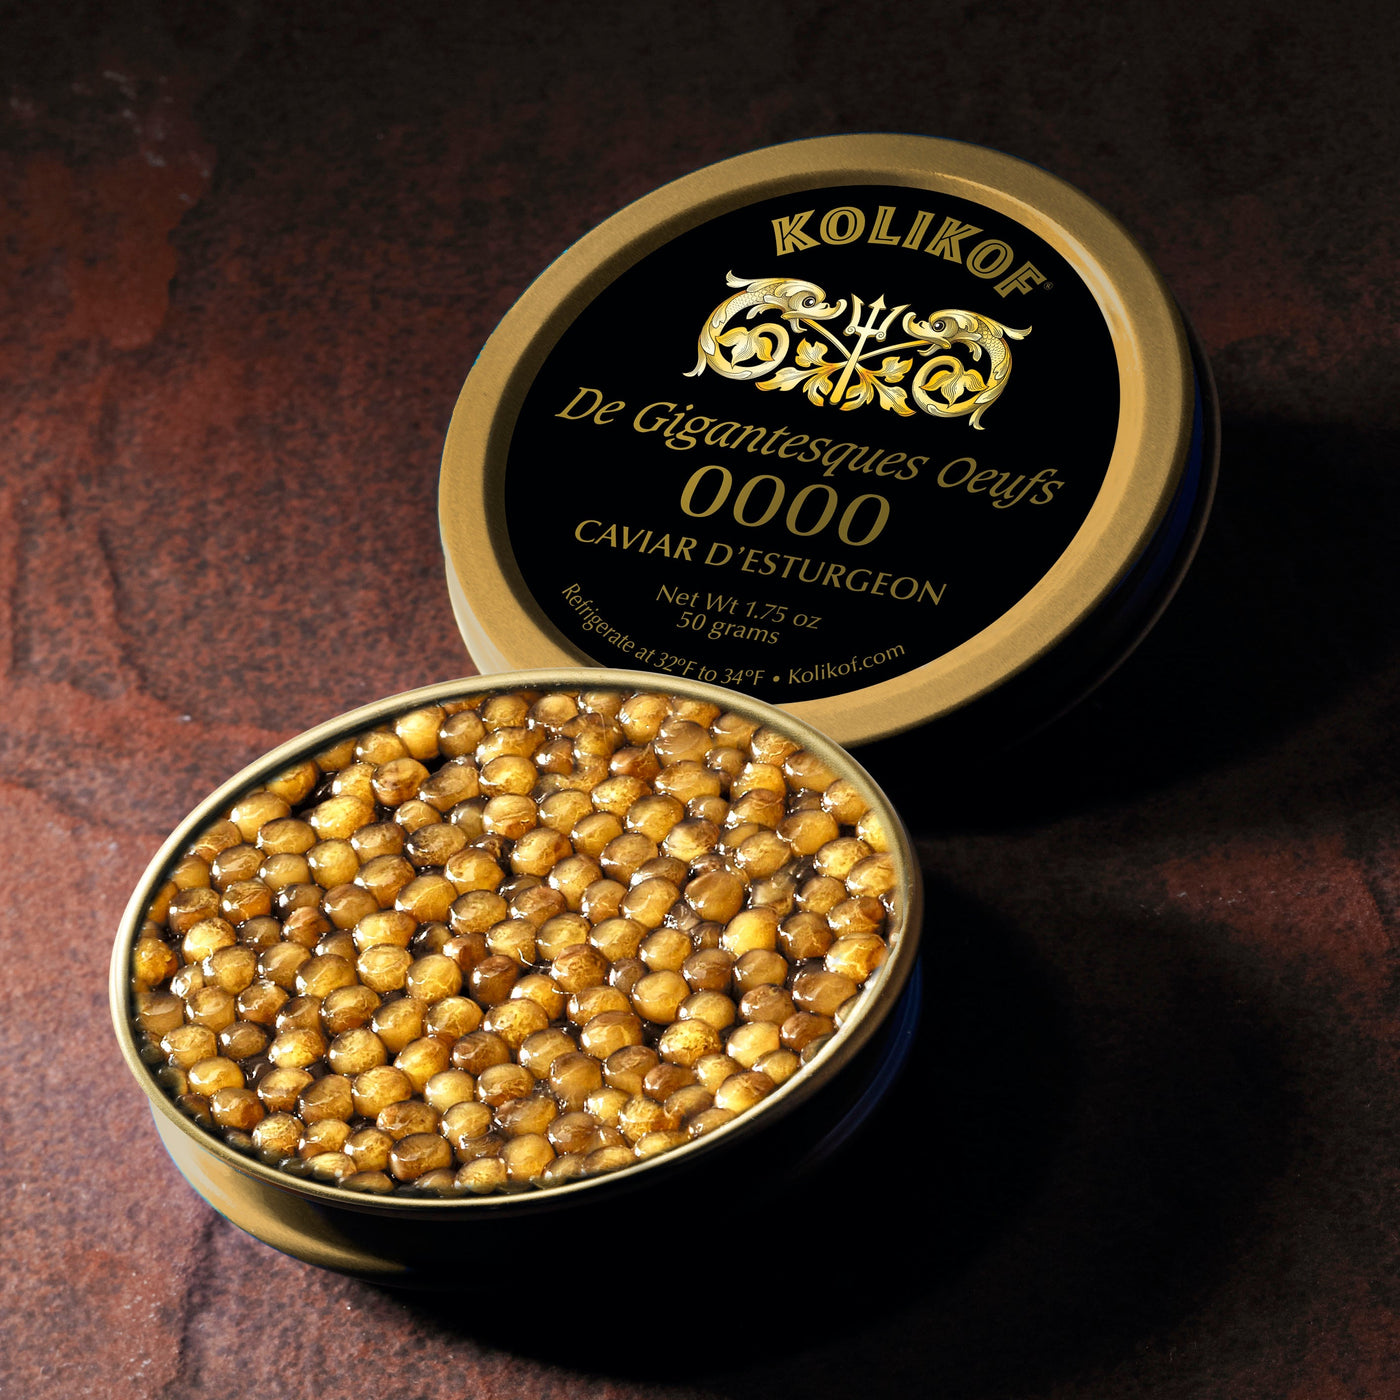 Rarest caviar, 0000 larger than Beluga Caviar